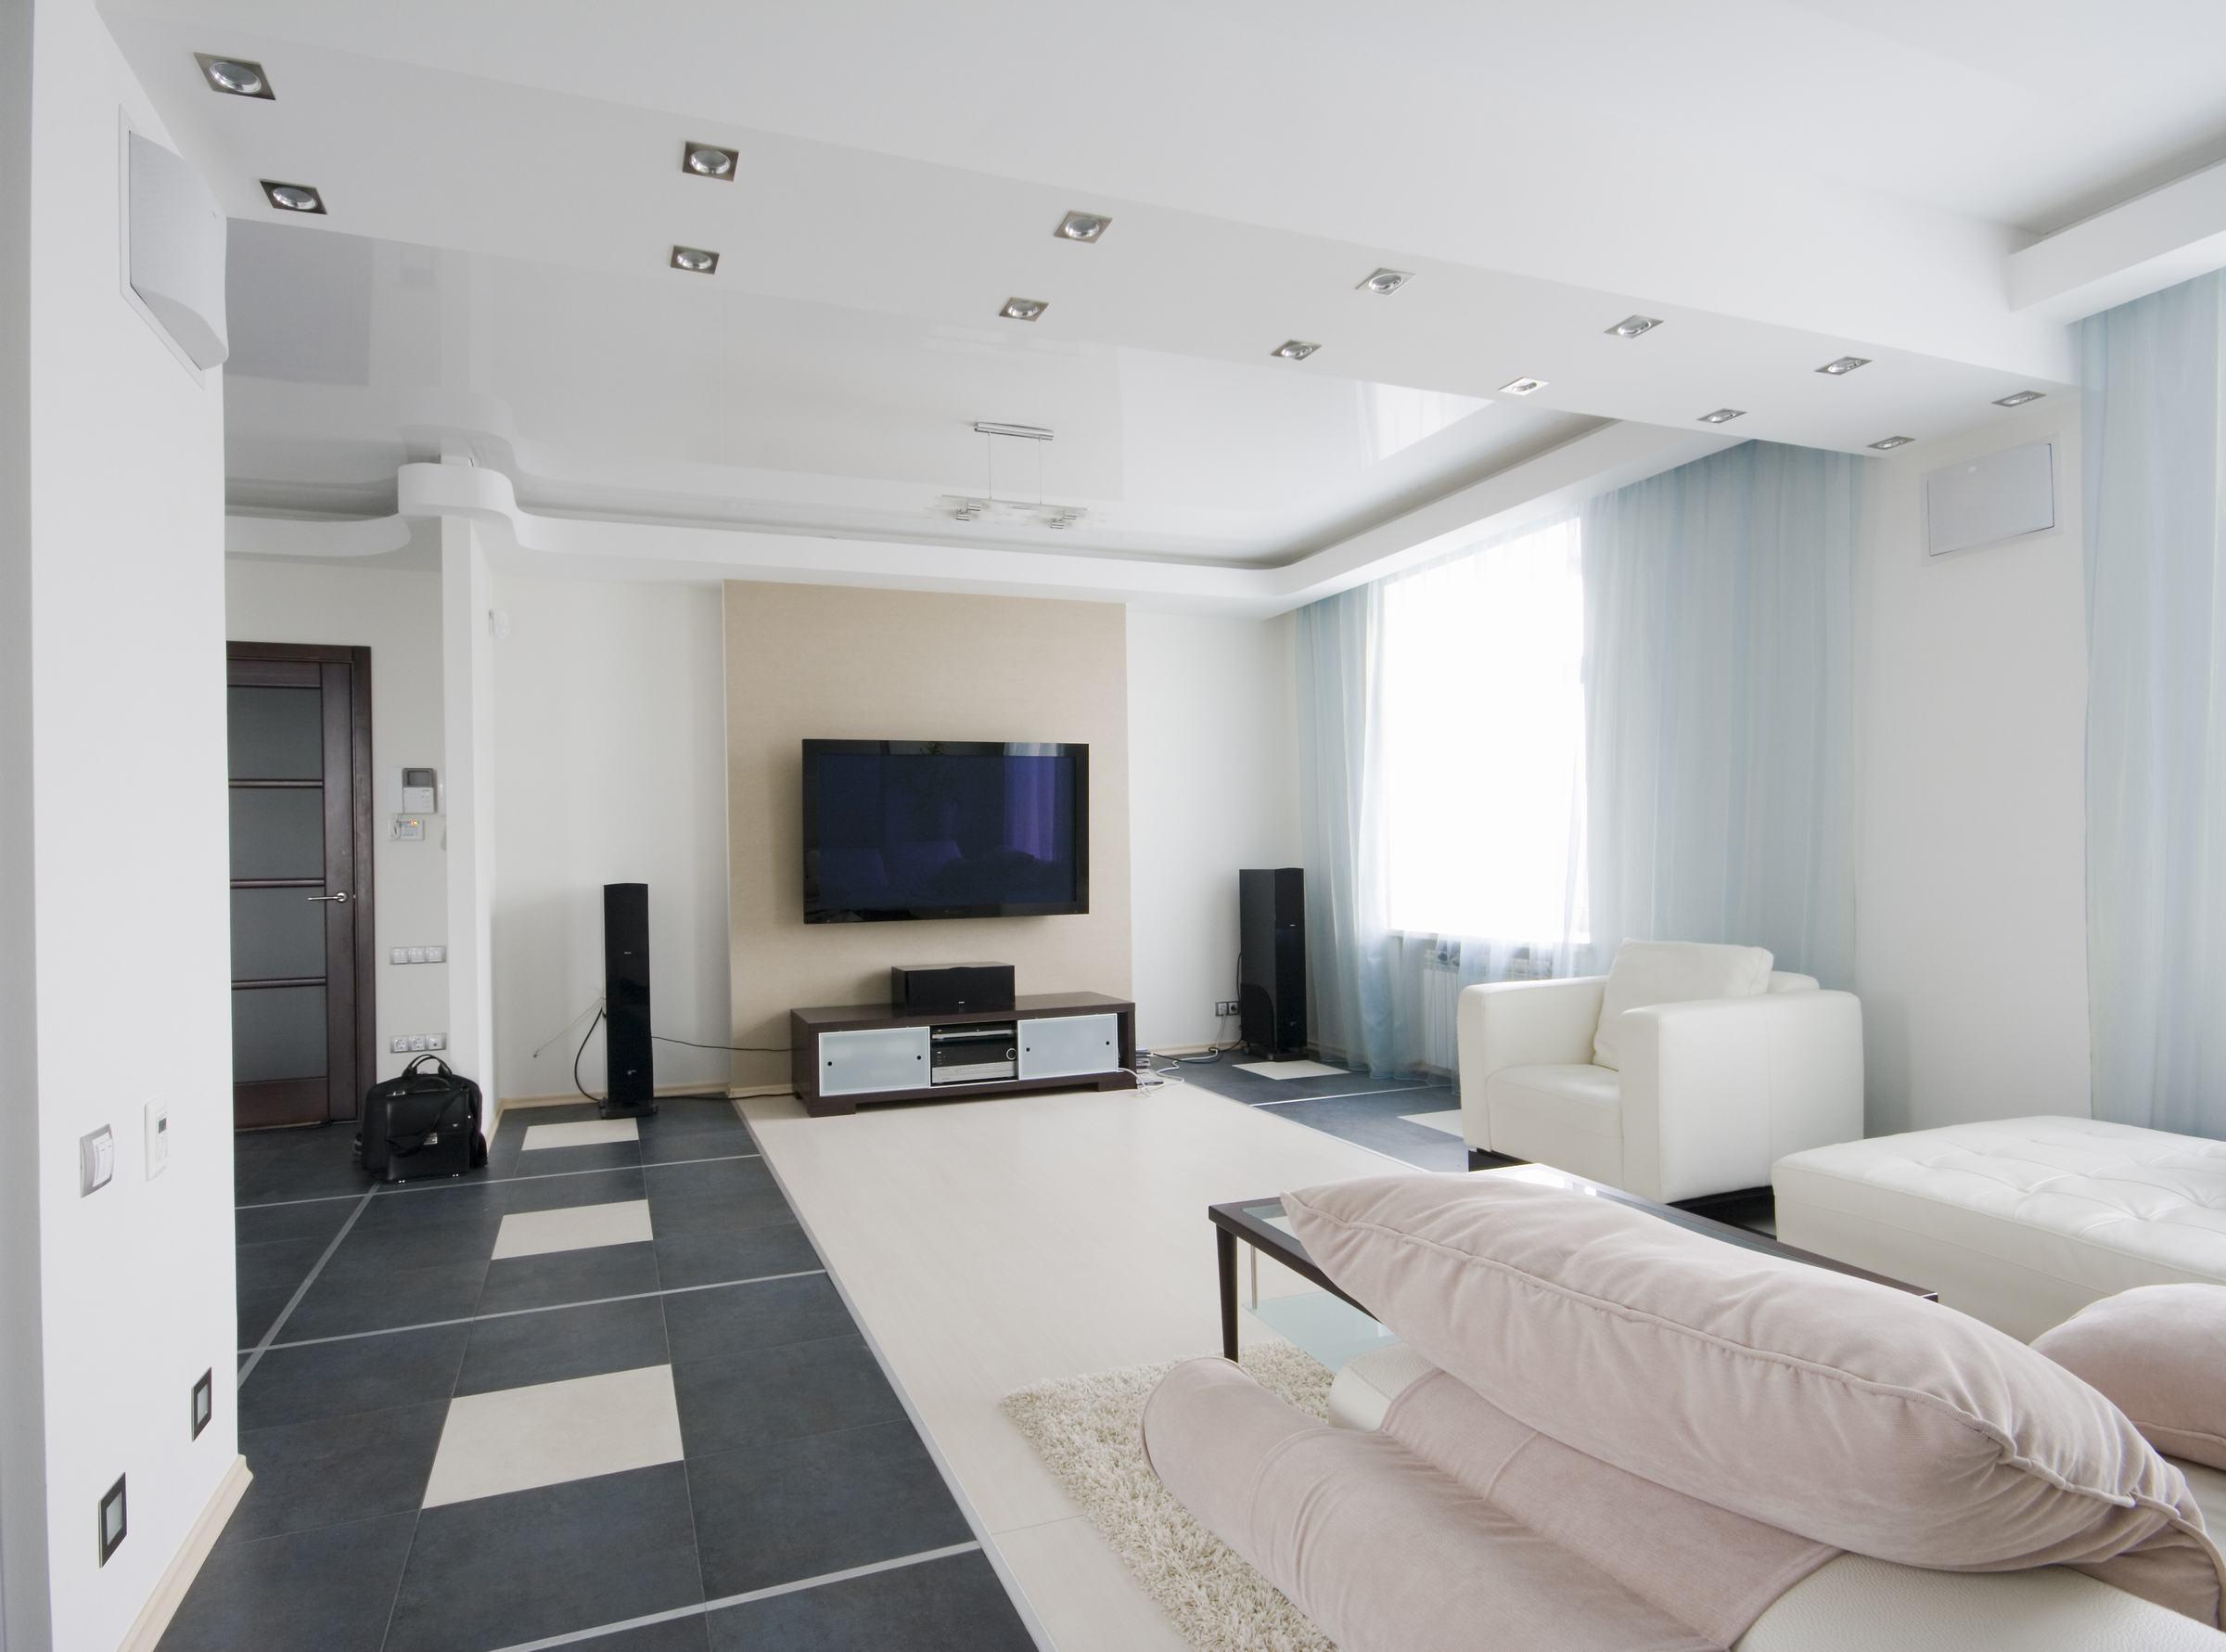 Với trần thạch cao phòng khách, bạn sẽ có một không gian sống hiện đại và thoải mái hơn. Với thiết kế đẹp mắt và tiện nghi, bạn có thể tận hưởng những khoảnh khắc tuyệt vời cùng gia đình và bạn bè.